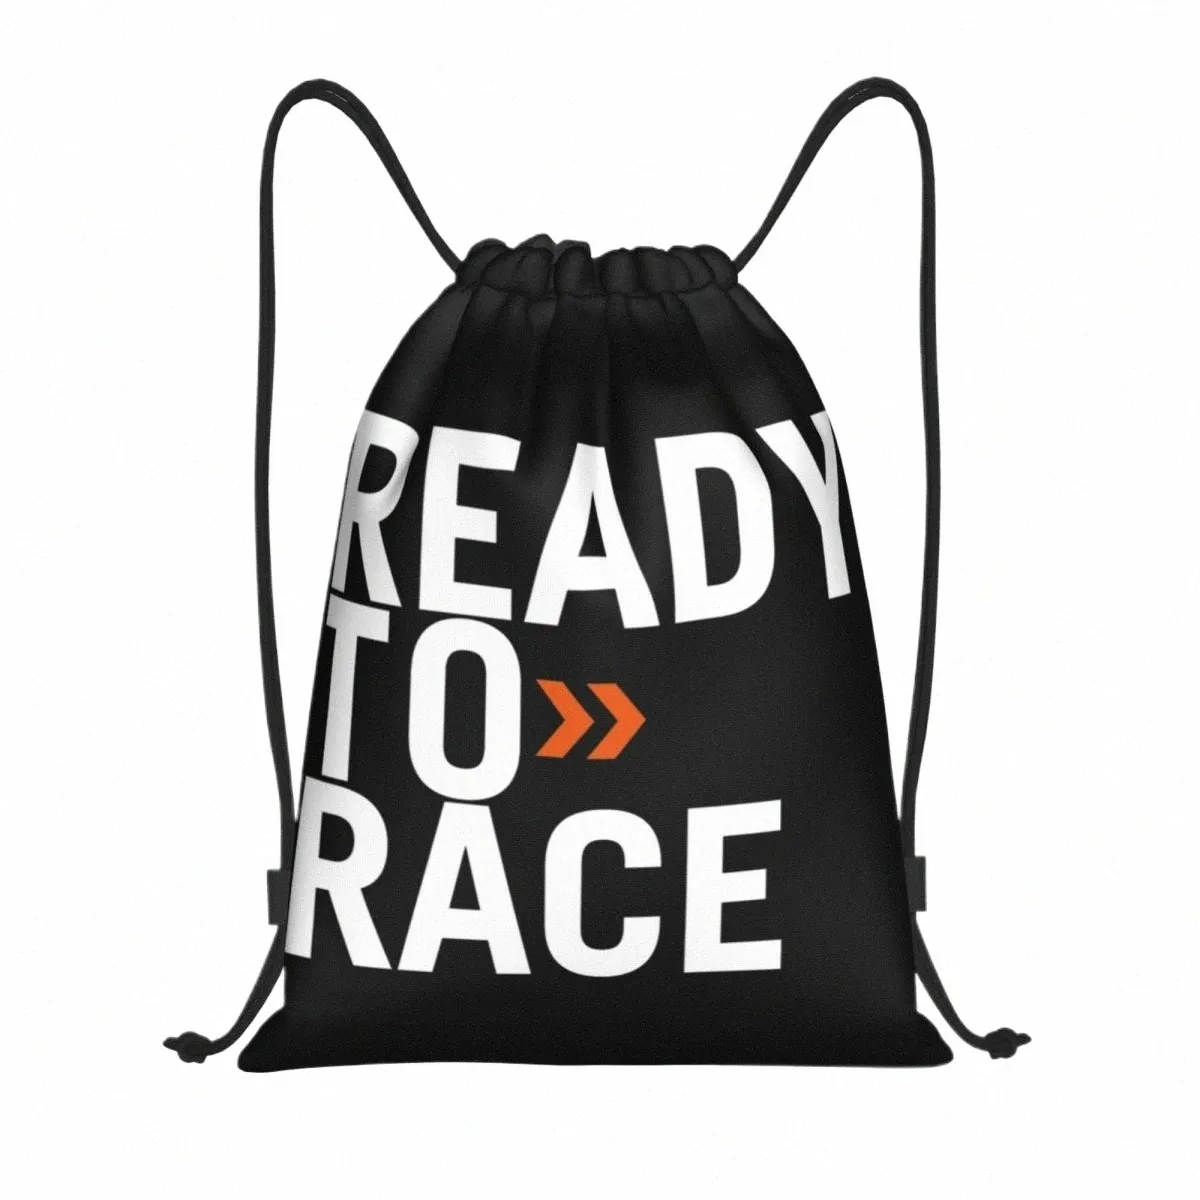 Gotowy do wyścigu Motorsport Packpack Plecak Sports Gym Bag Motocykl bitumiczny rower enduro sackpack dla jogi 31vi#